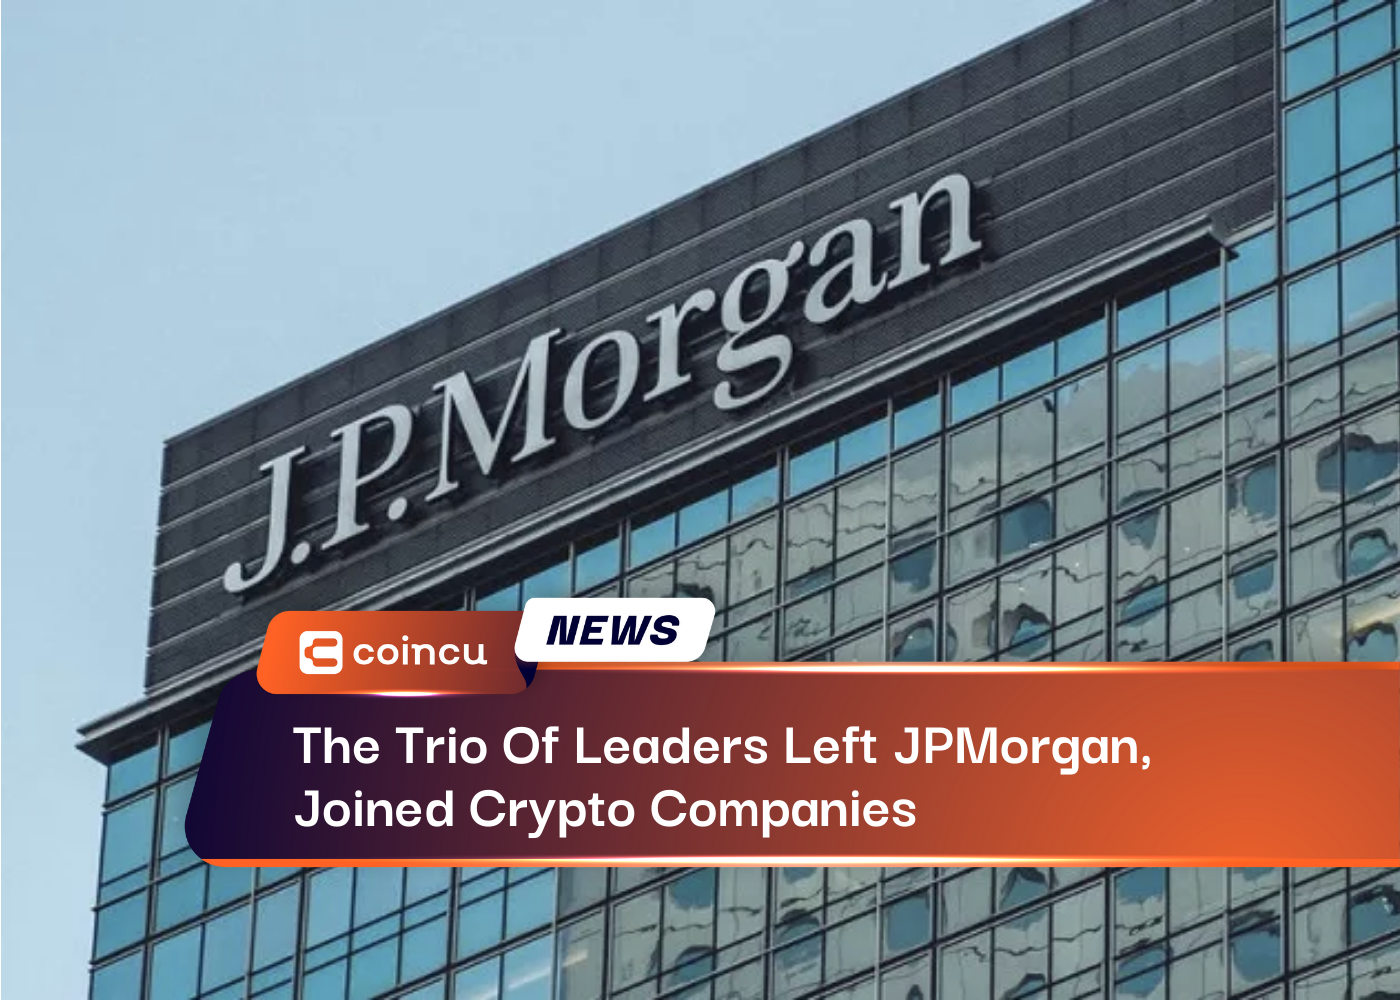 El trío de líderes abandonó JPMorgan y se unió a empresas de cifrado